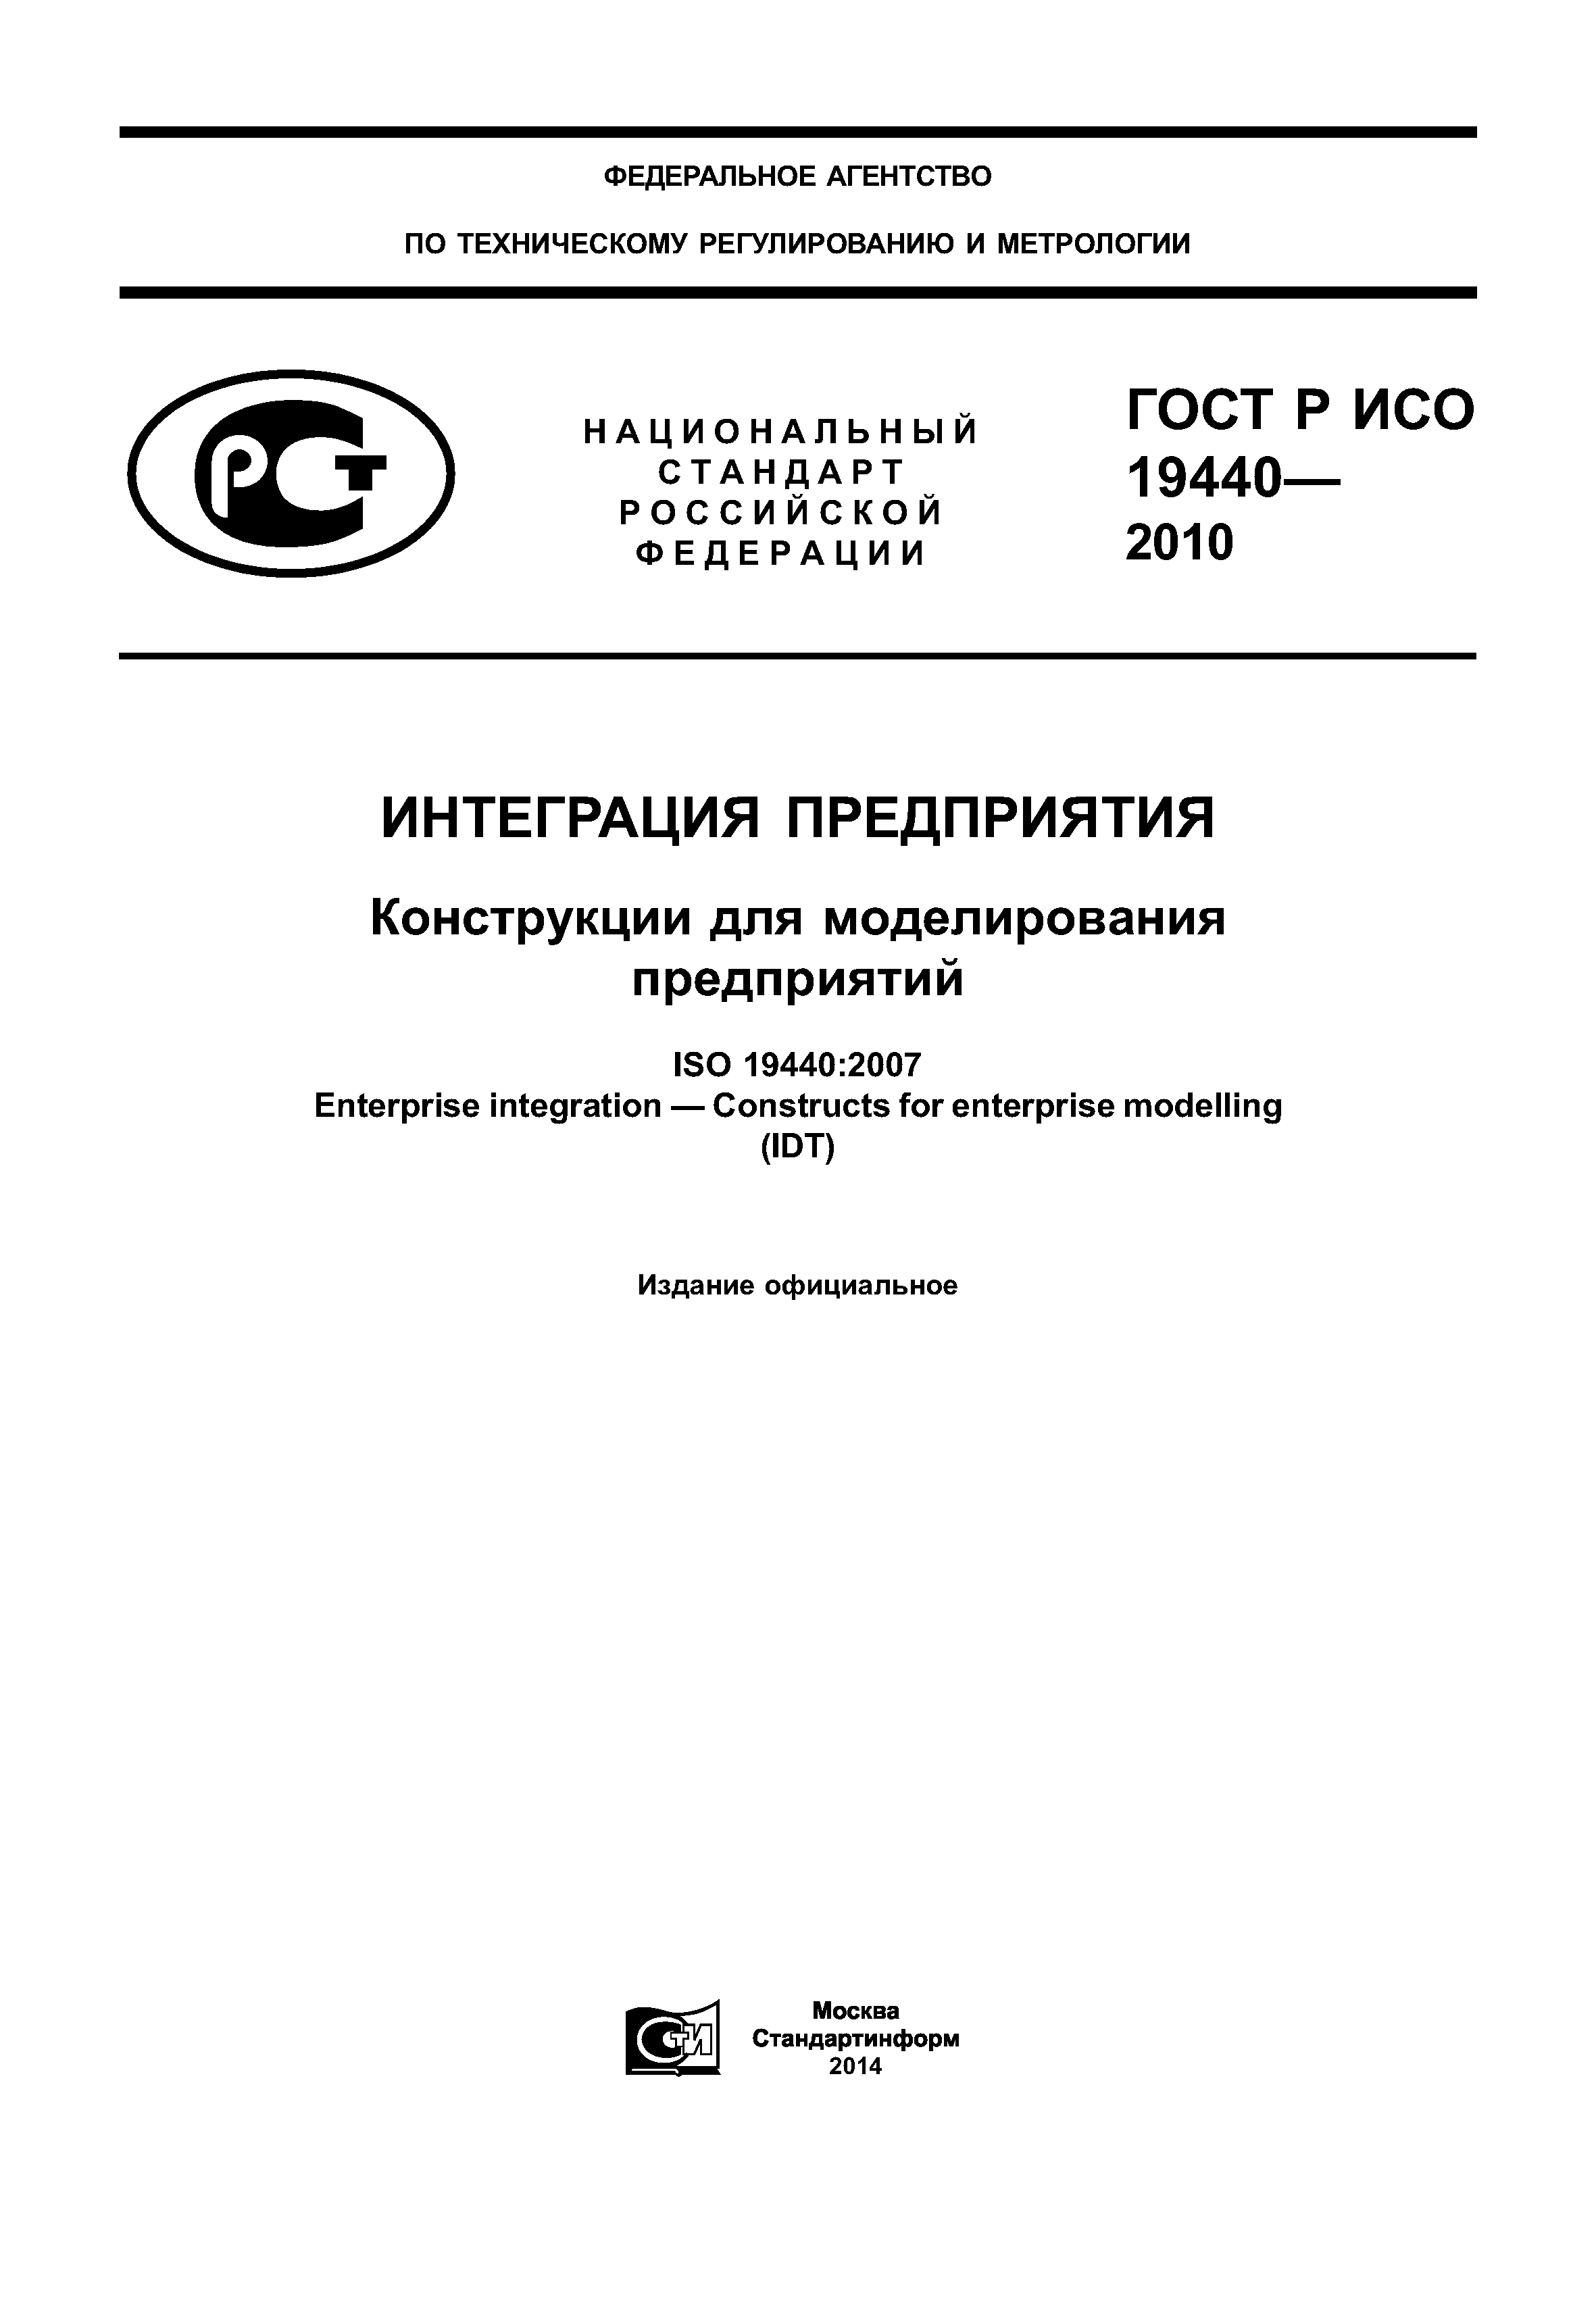 ГОСТ Р ИСО 19440-2010